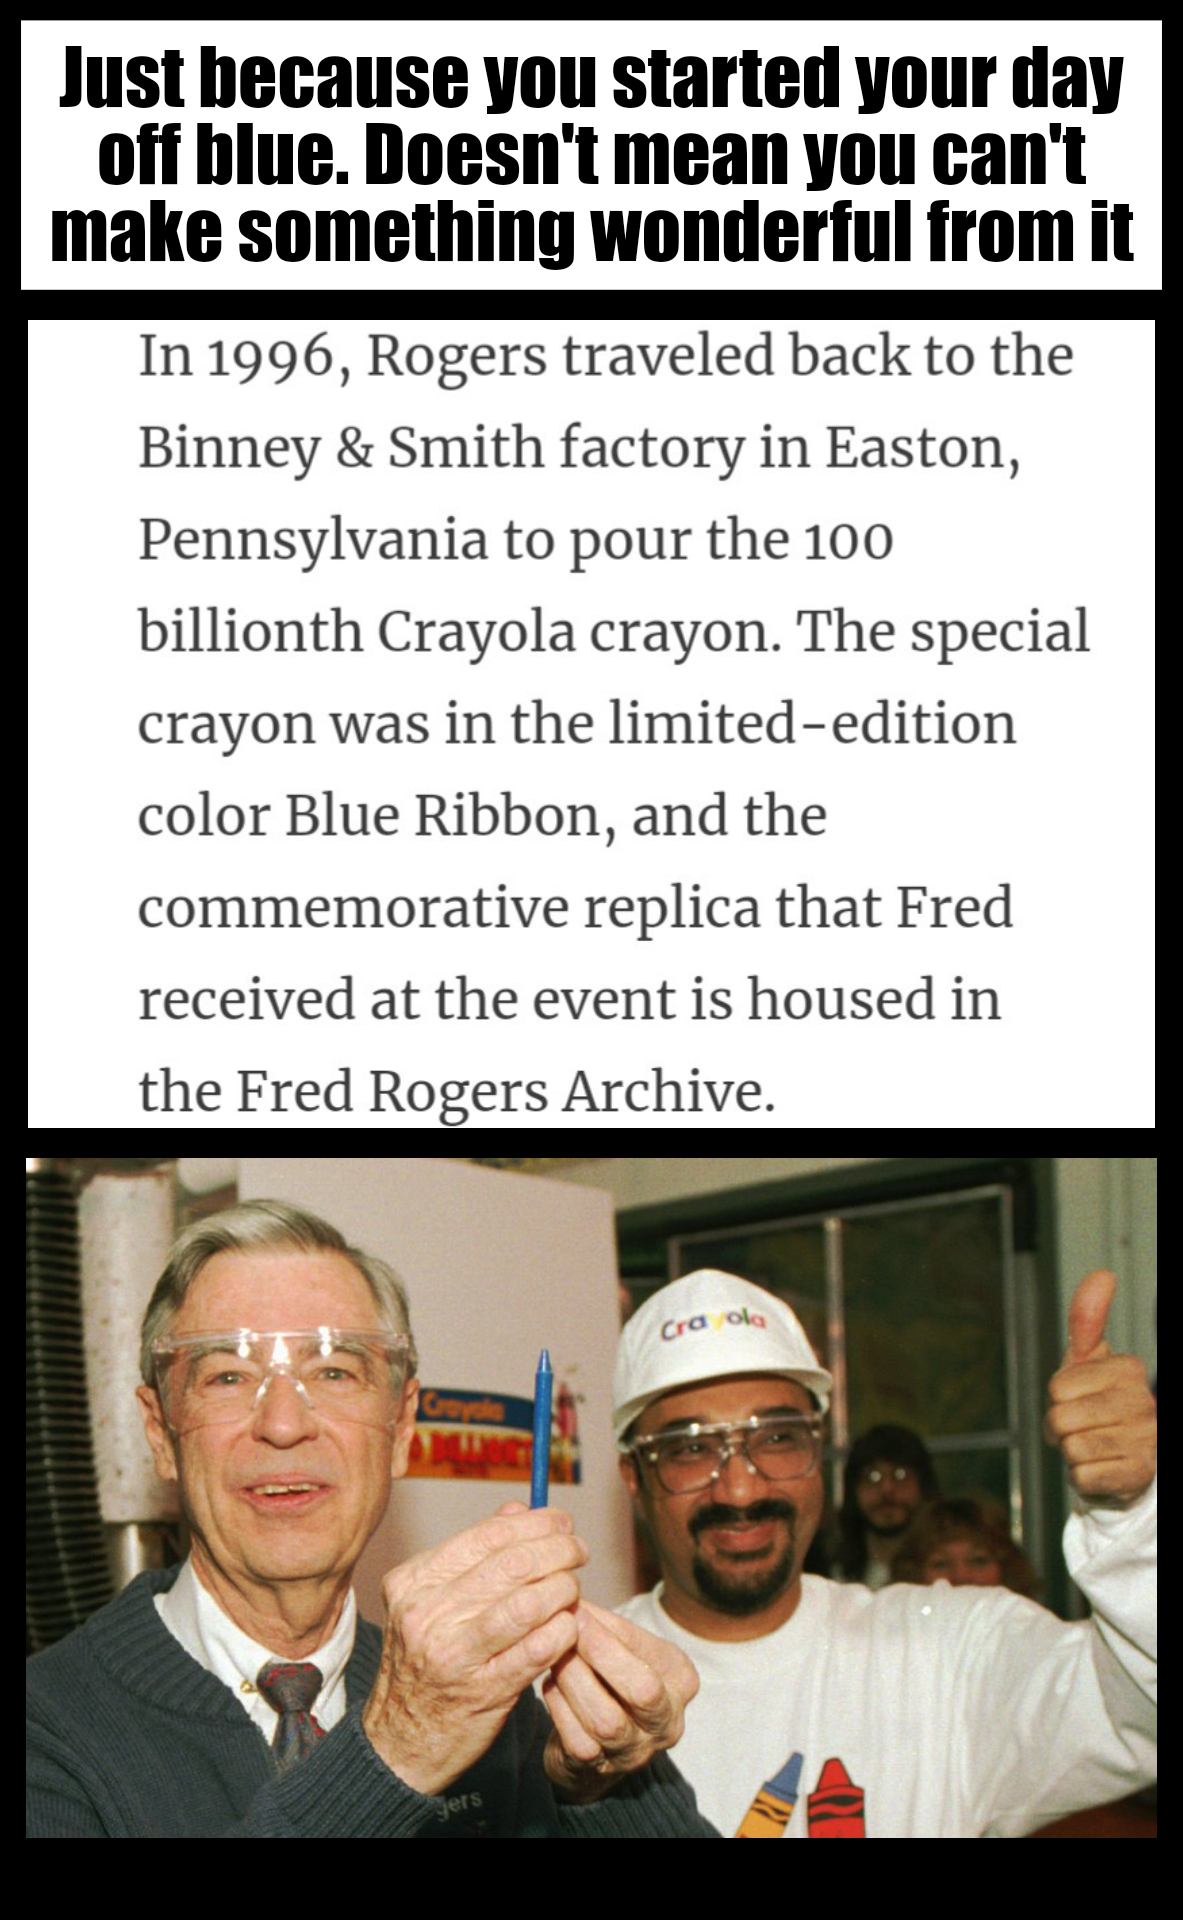 Mister Rogers deserves the blue ribbon.